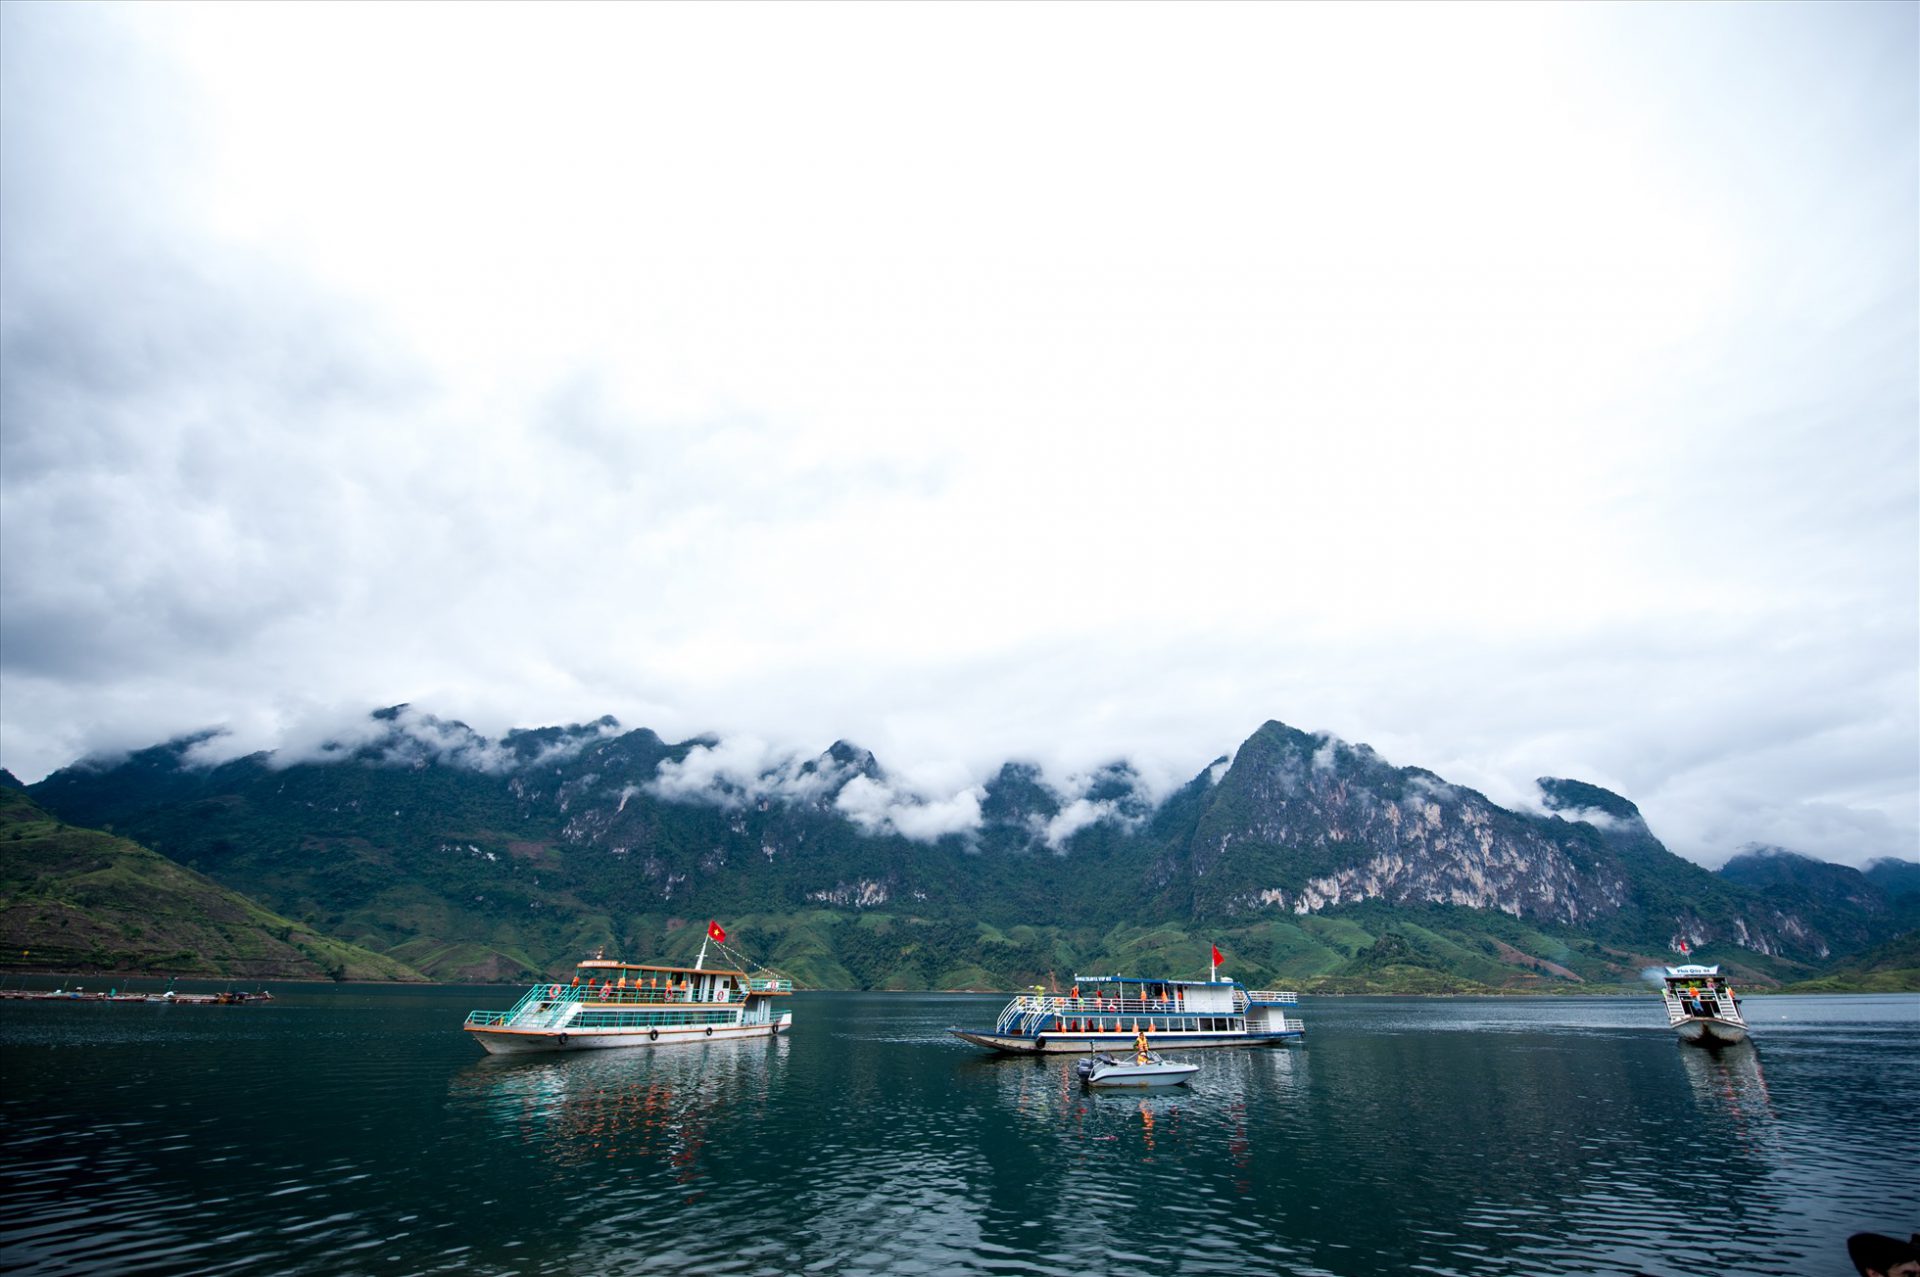 Những điểm du lịch trên lòng hồ sông Đà cũng nằm trong chương trình trải nghiệm, quảng bá du lịch thông qua cuộc thi sắc đẹp quốc tế này.